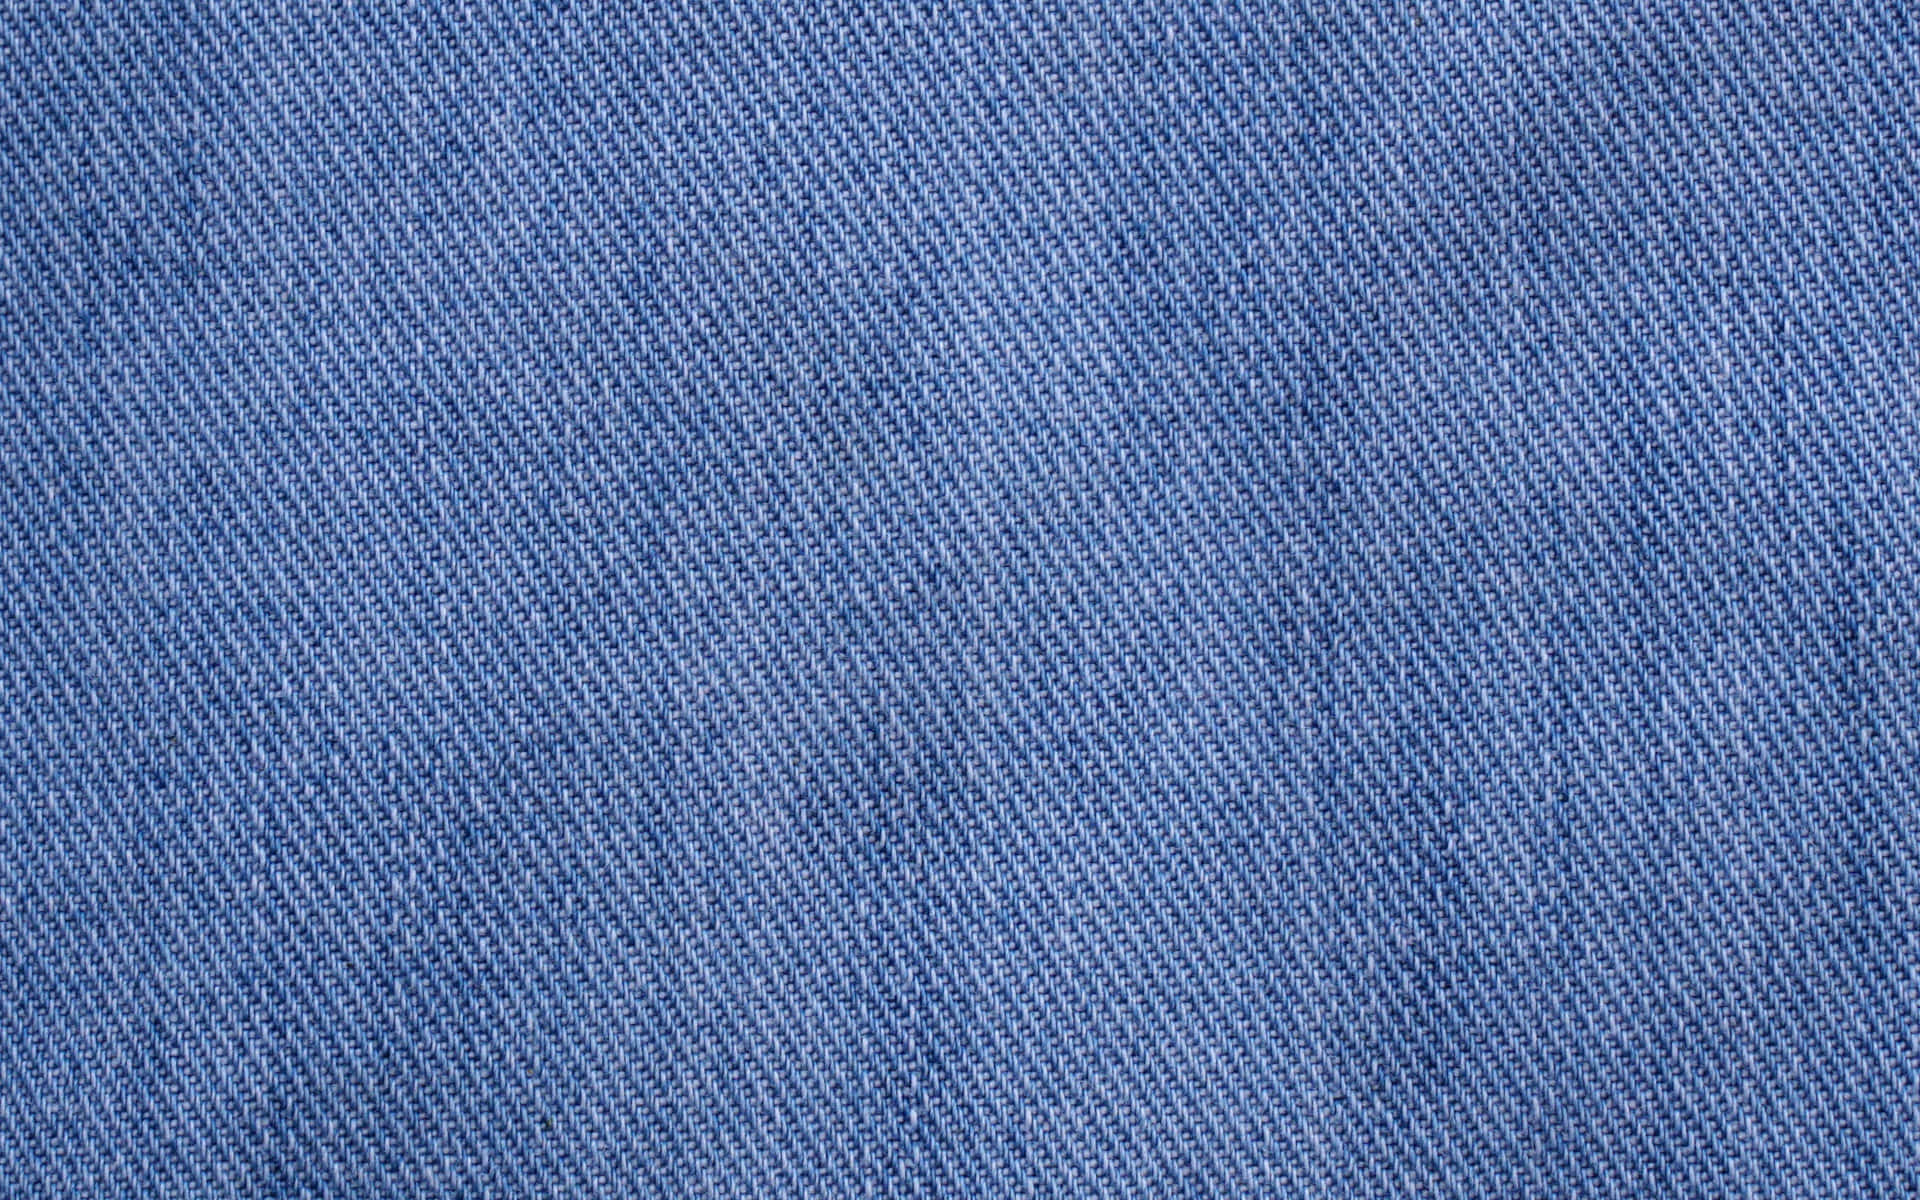 Denim Textile Close-Up